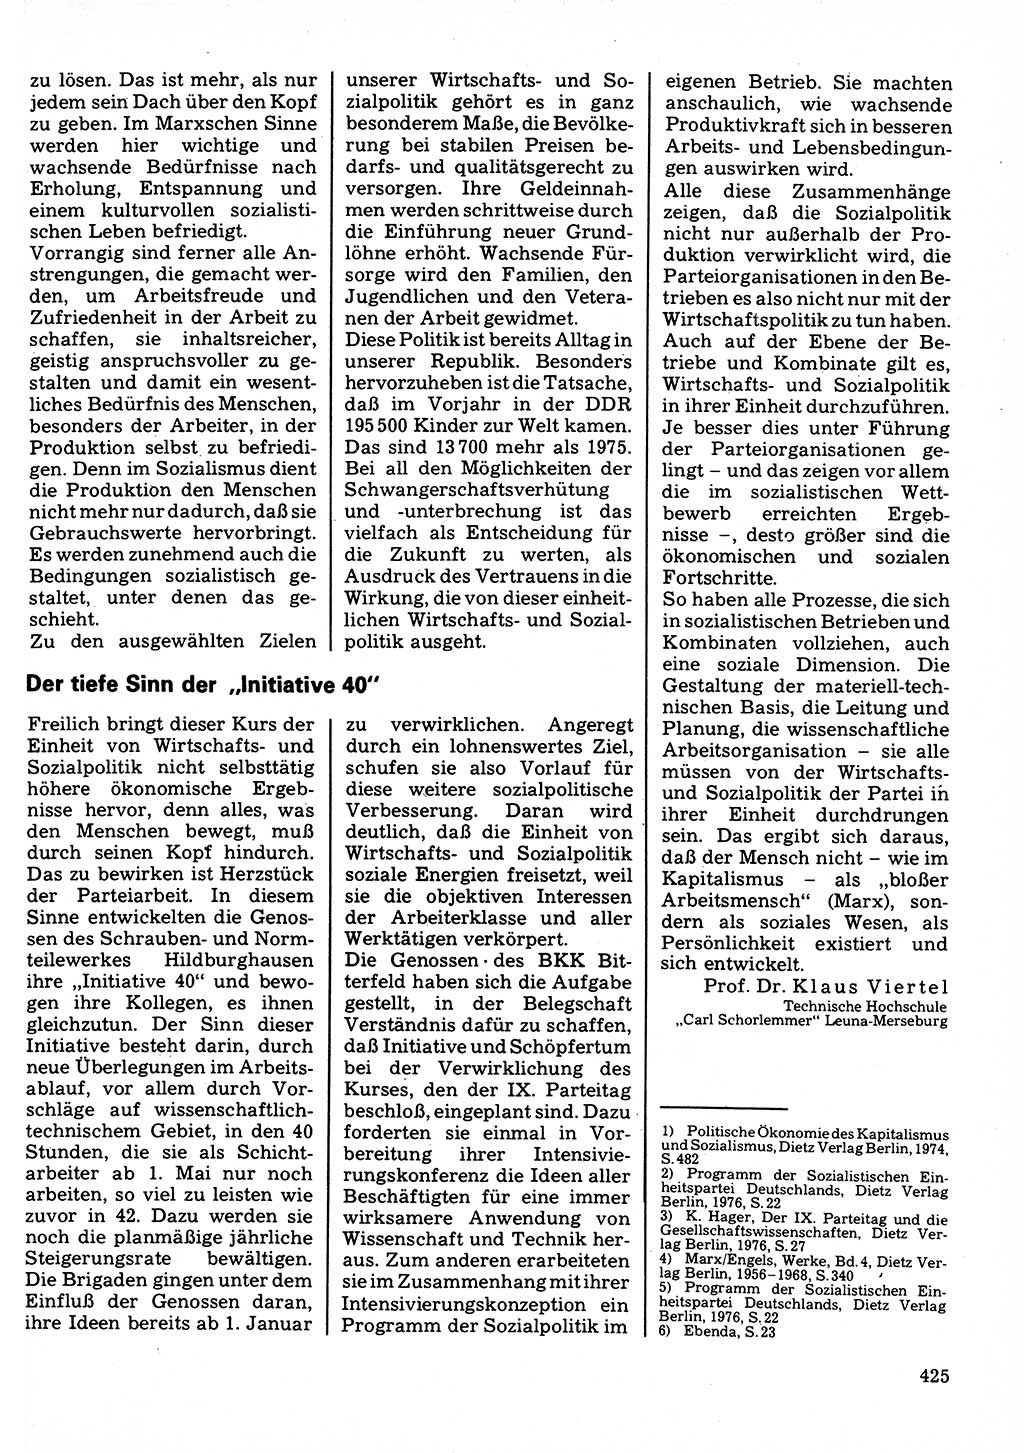 Neuer Weg (NW), Organ des Zentralkomitees (ZK) der SED (Sozialistische Einheitspartei Deutschlands) für Fragen des Parteilebens, 32. Jahrgang [Deutsche Demokratische Republik (DDR)] 1977, Seite 425 (NW ZK SED DDR 1977, S. 425)